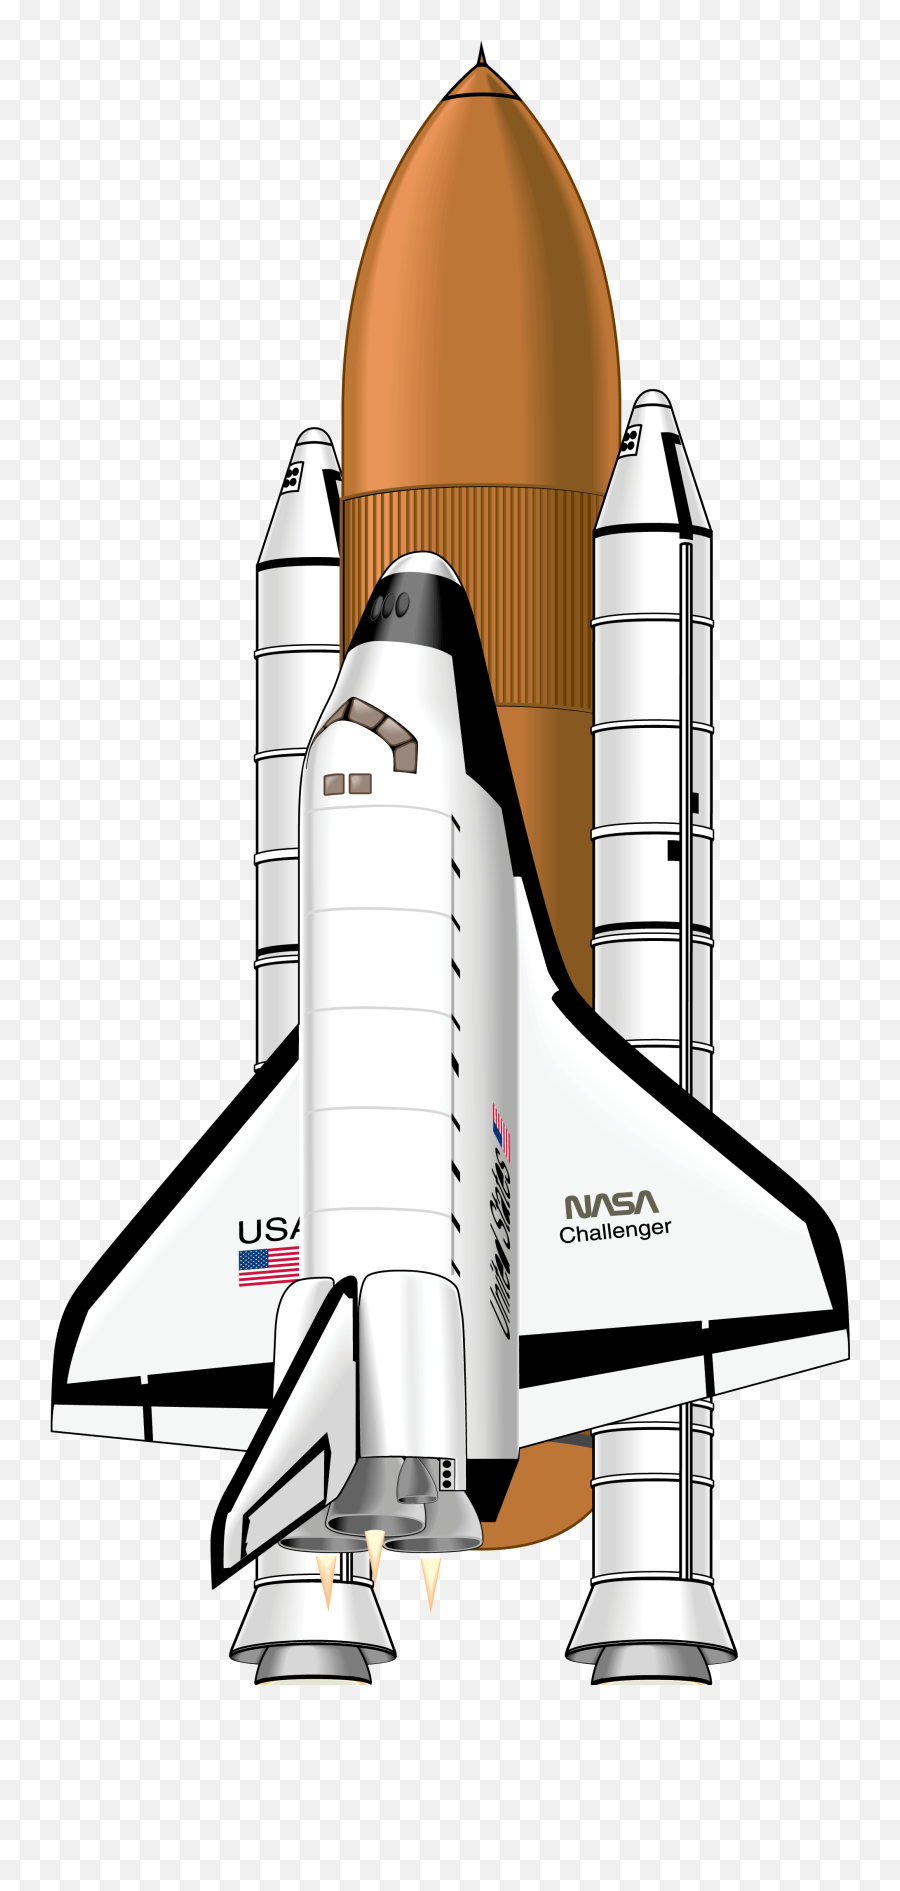 Shuttle - Rocket Ship Png Nasa,Space Shuttle Png